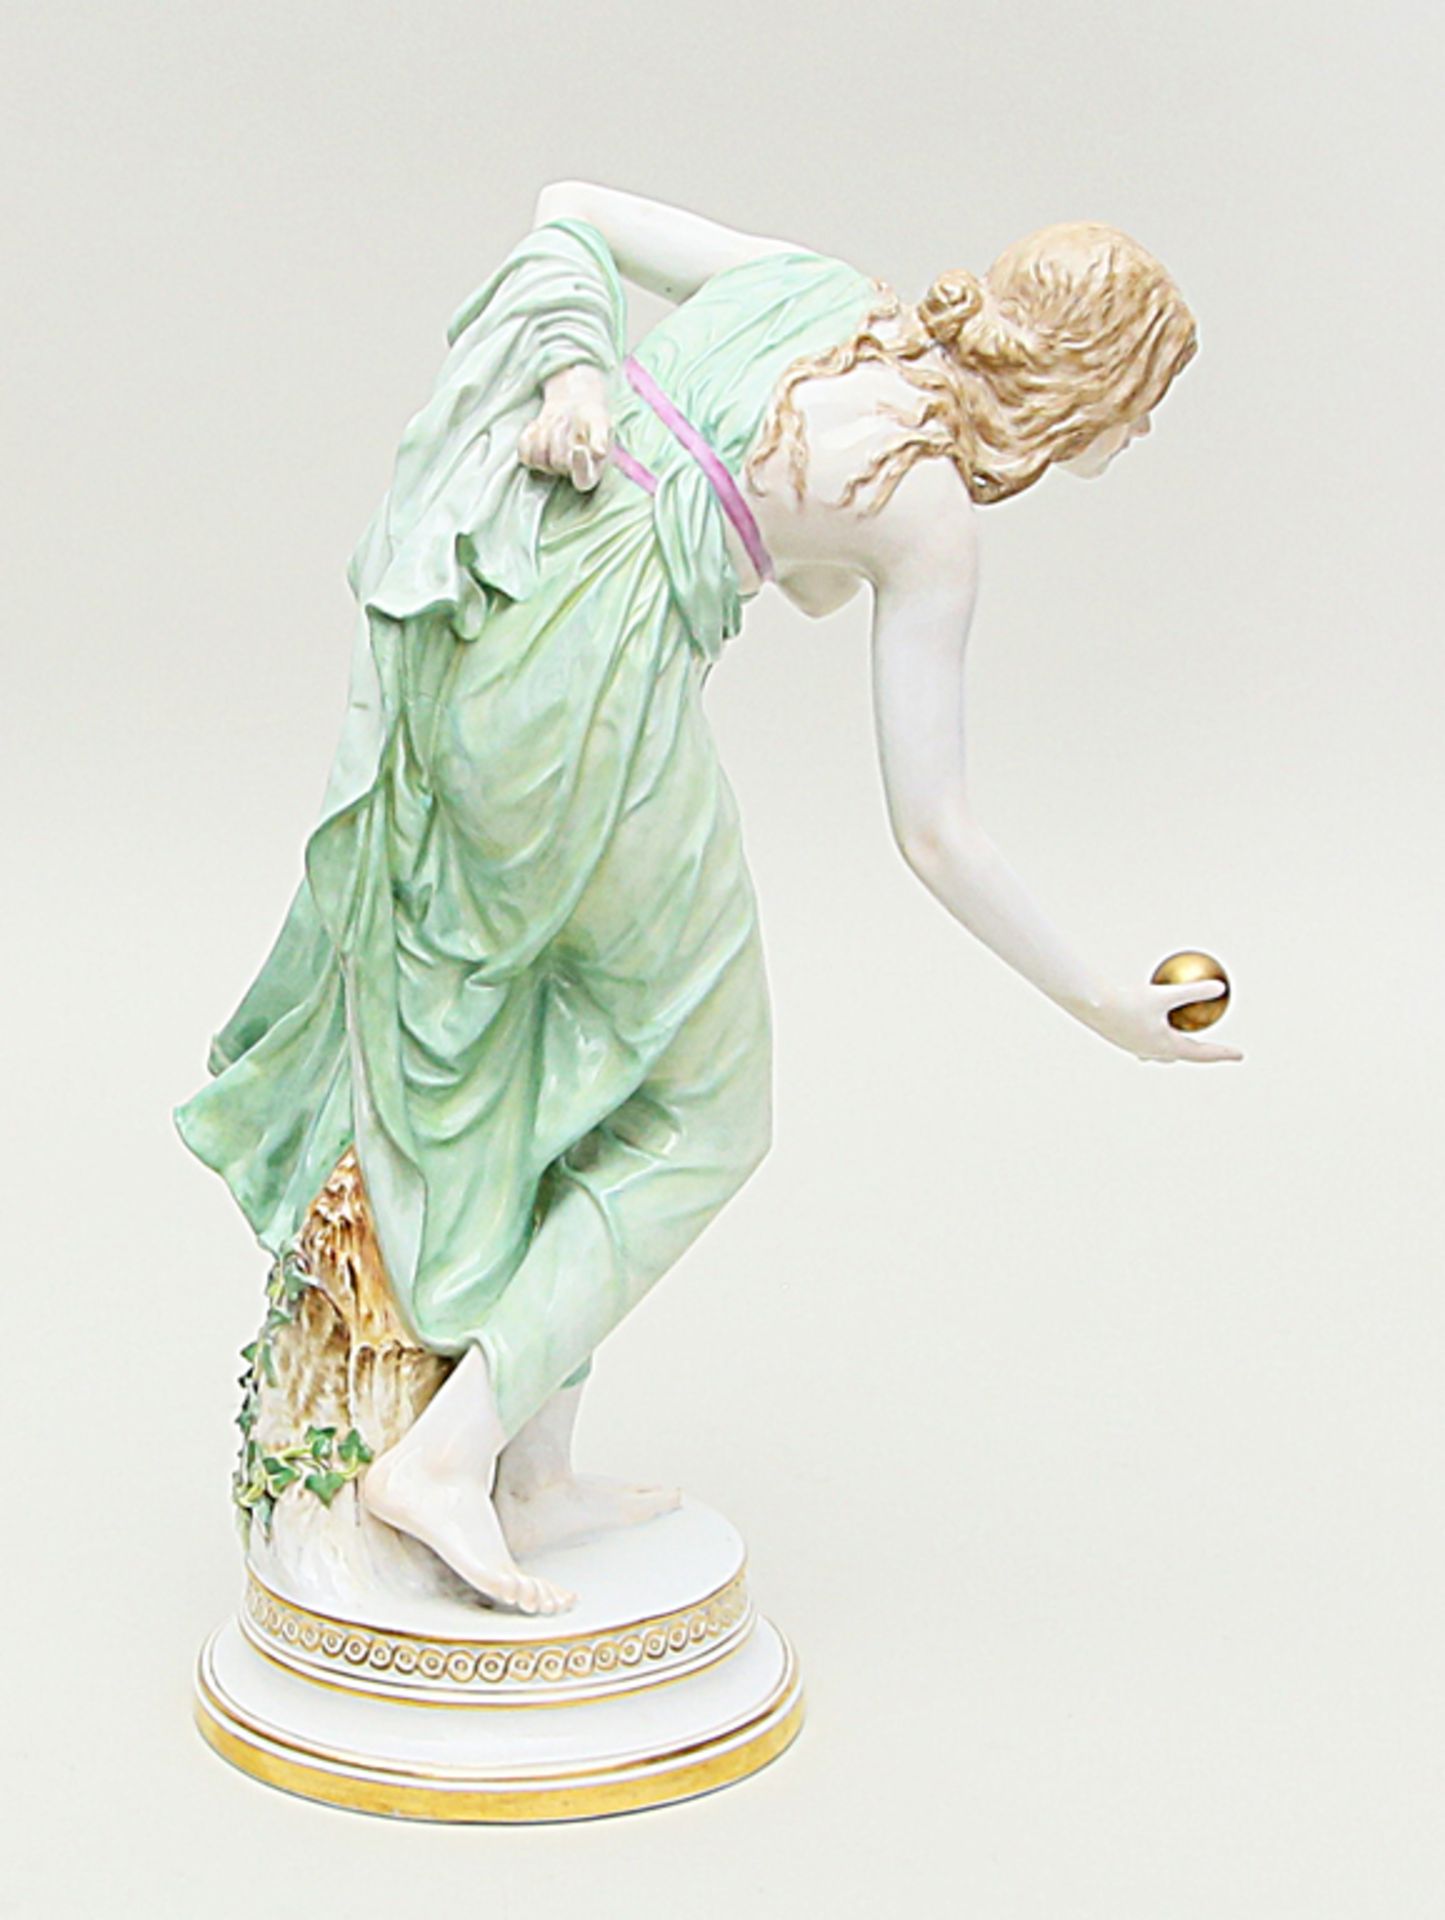 Schott, Walter (1861 Ilseburg - Berlin 1938) Skulptur "Kugelspielerin". Porzellan. Bunt bemalt. - Bild 2 aus 2